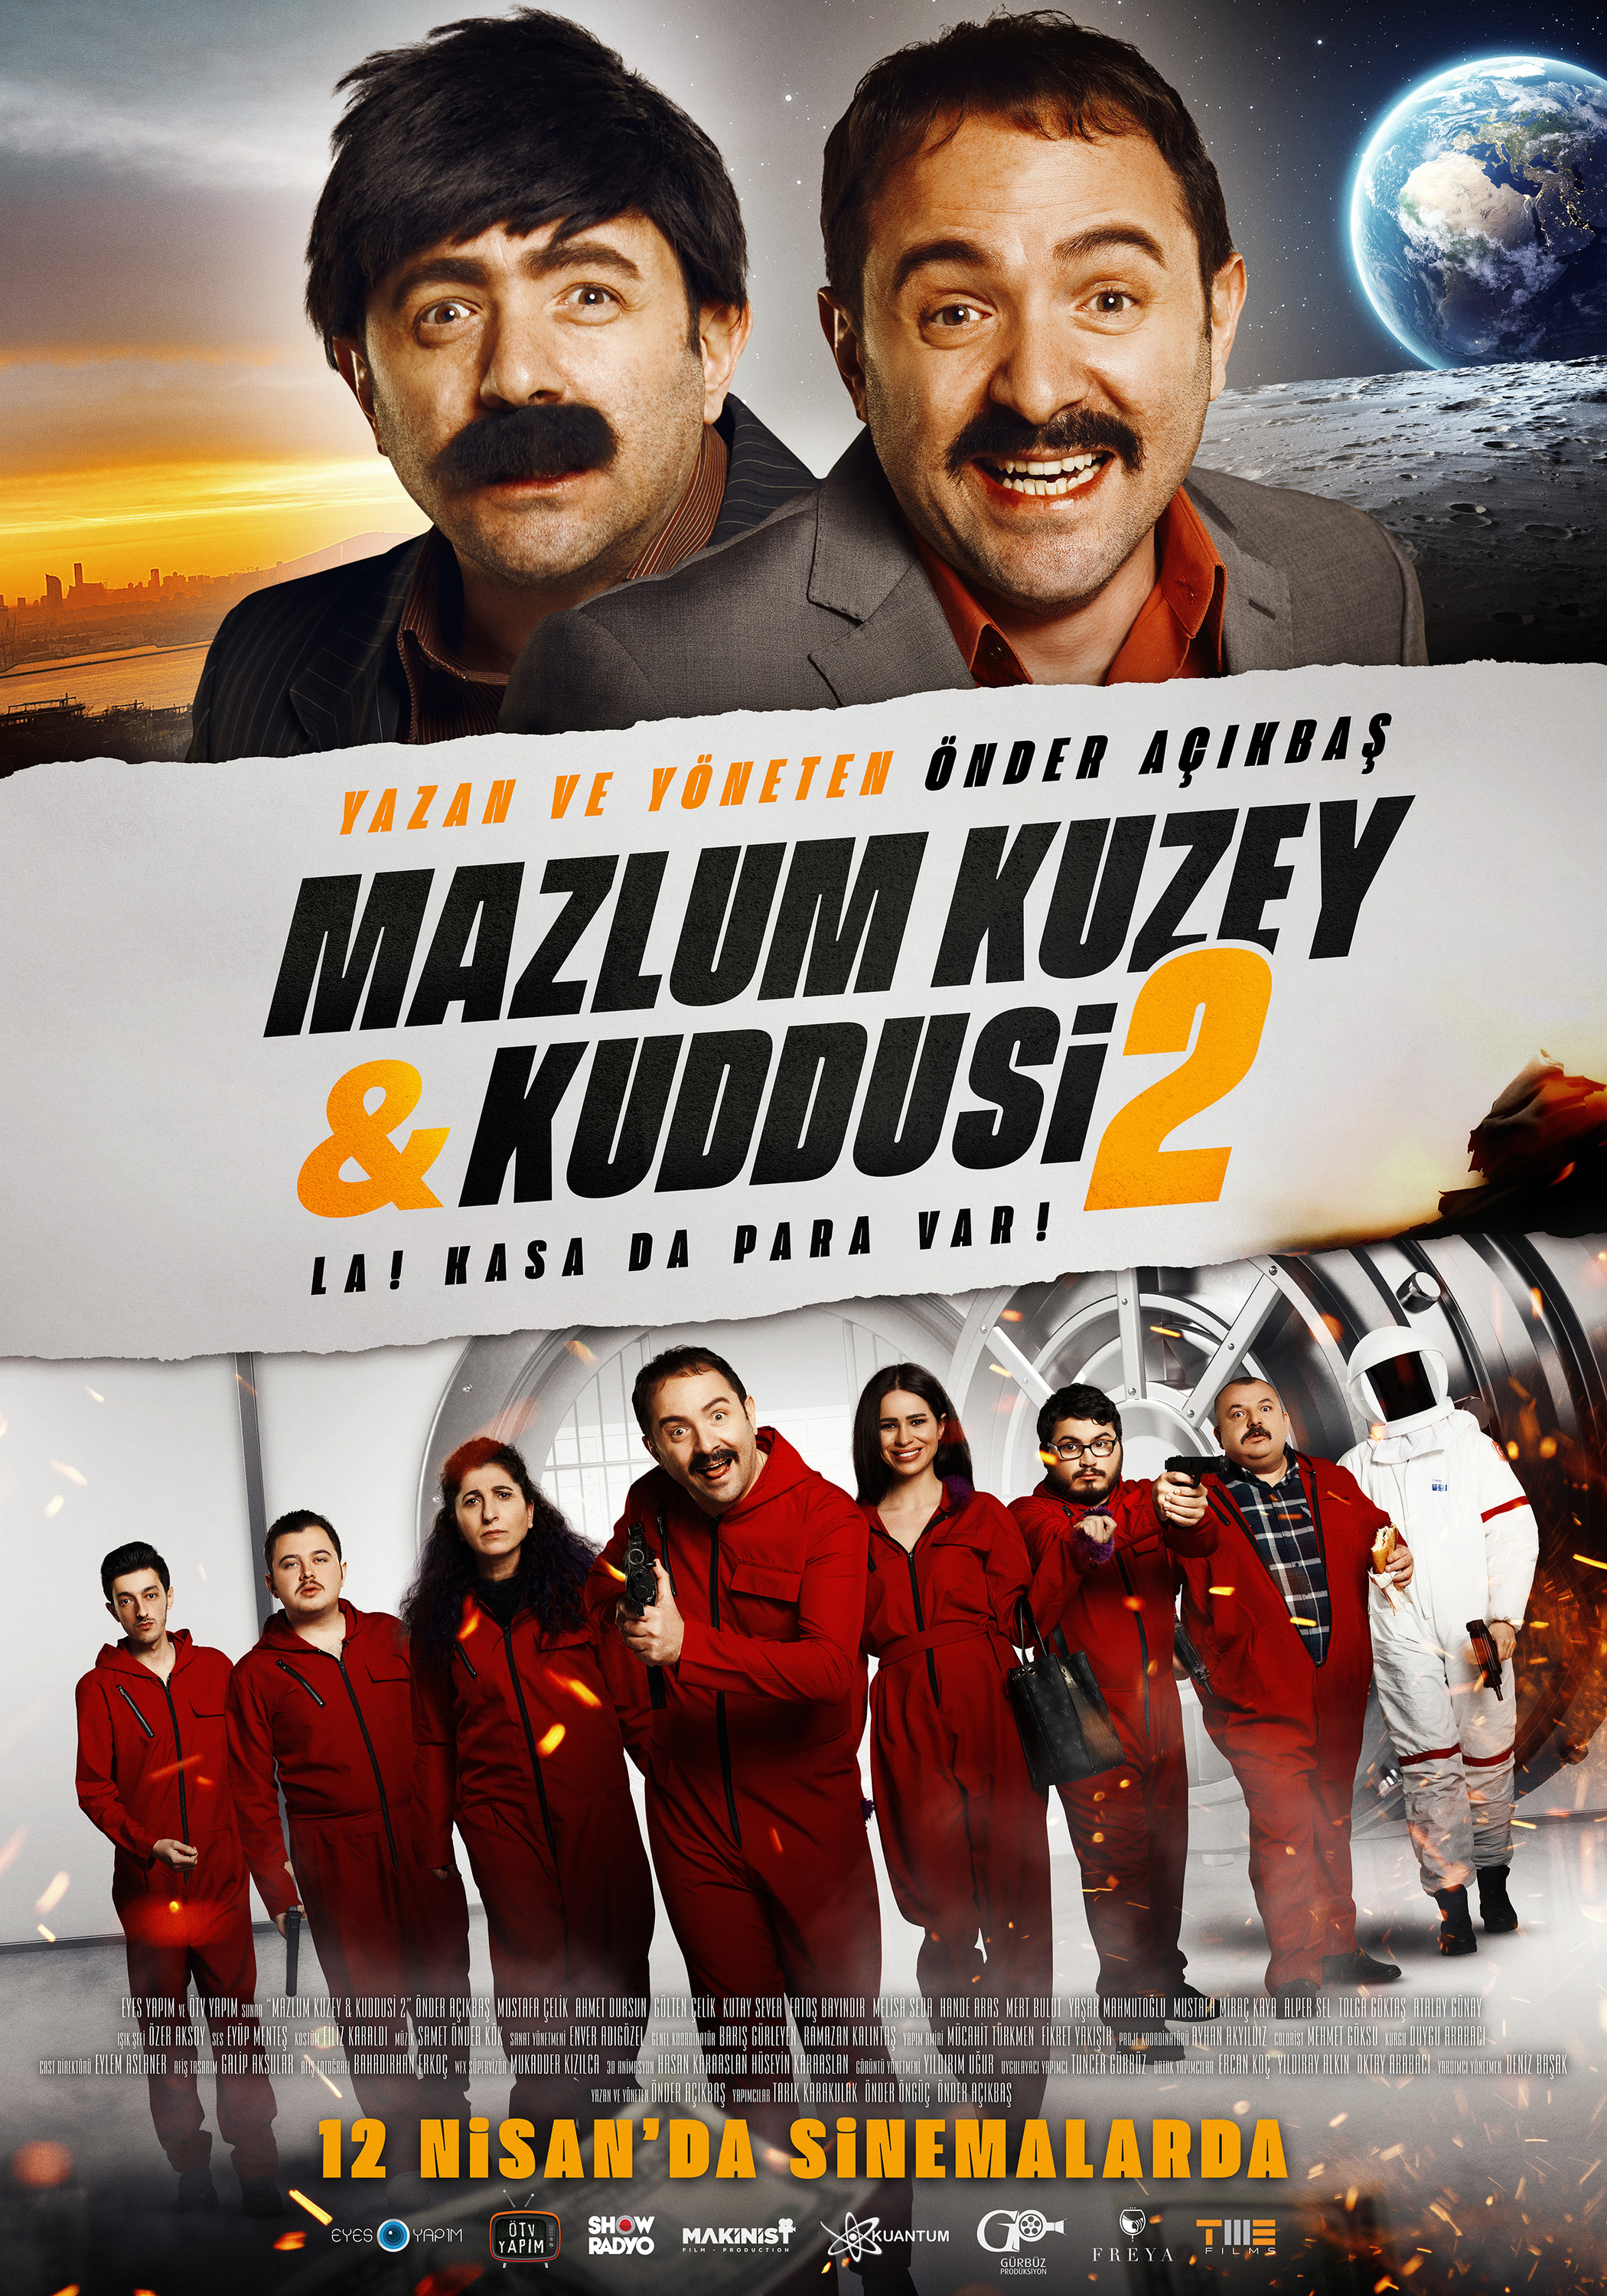 Mega Sized Movie Poster Image for Mazlum Kuzey & Kuddusi 2 La! Kasada Para Var! (#1 of 3)